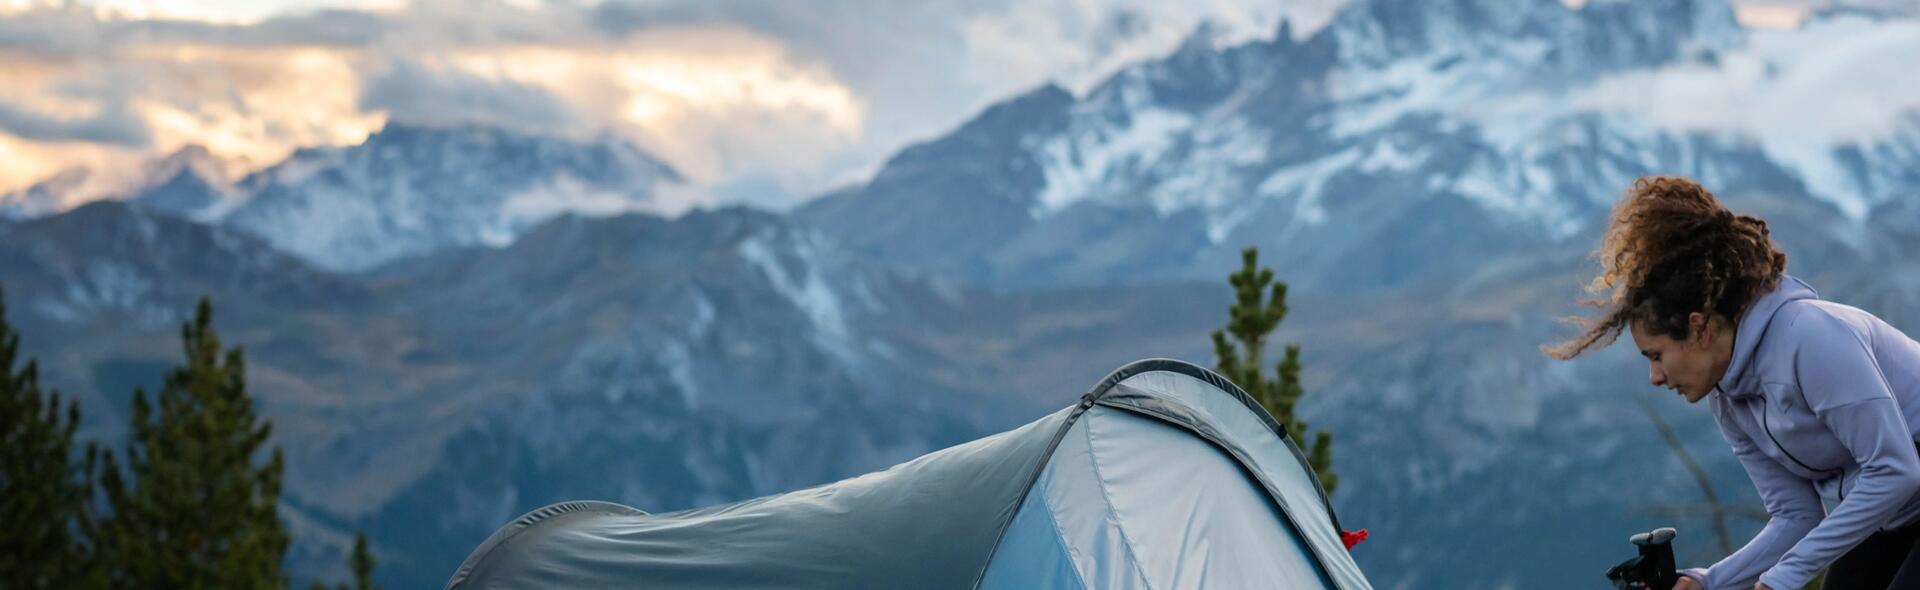 kobieta trzymająca plecak turystyczny i kije trekkingowe przed namiotem  rozłożonym w plenerze